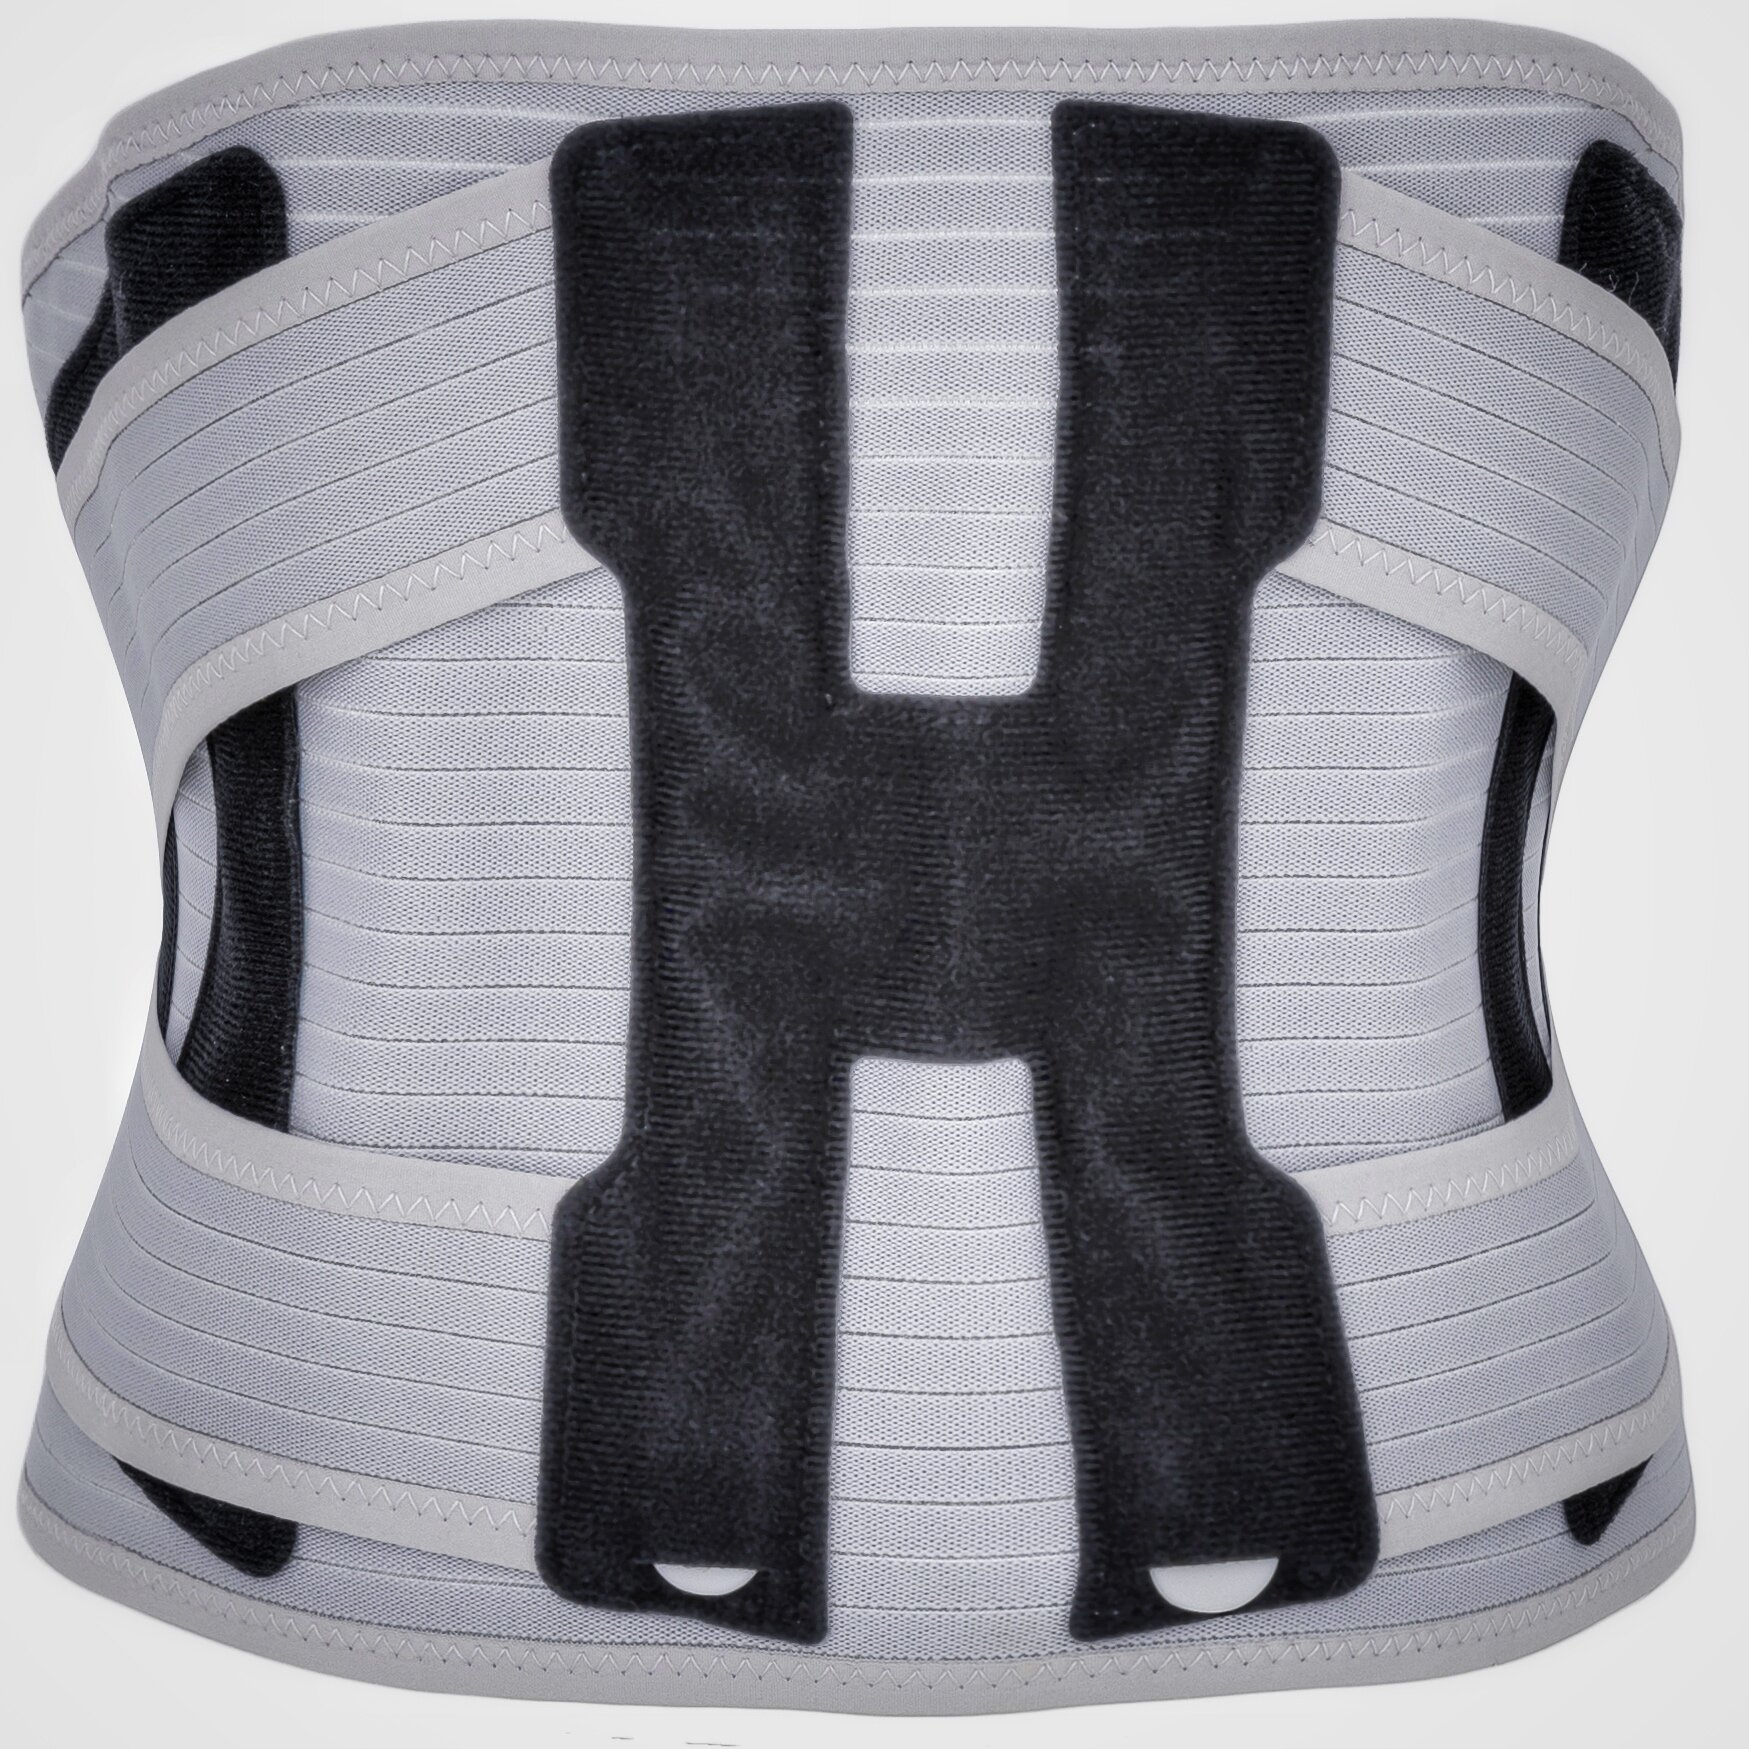 Корсет для спины ортопедический поясничный с 2-х ступенчатой степенью фиксации - р. S ( обхват талии 70-86 см), серый